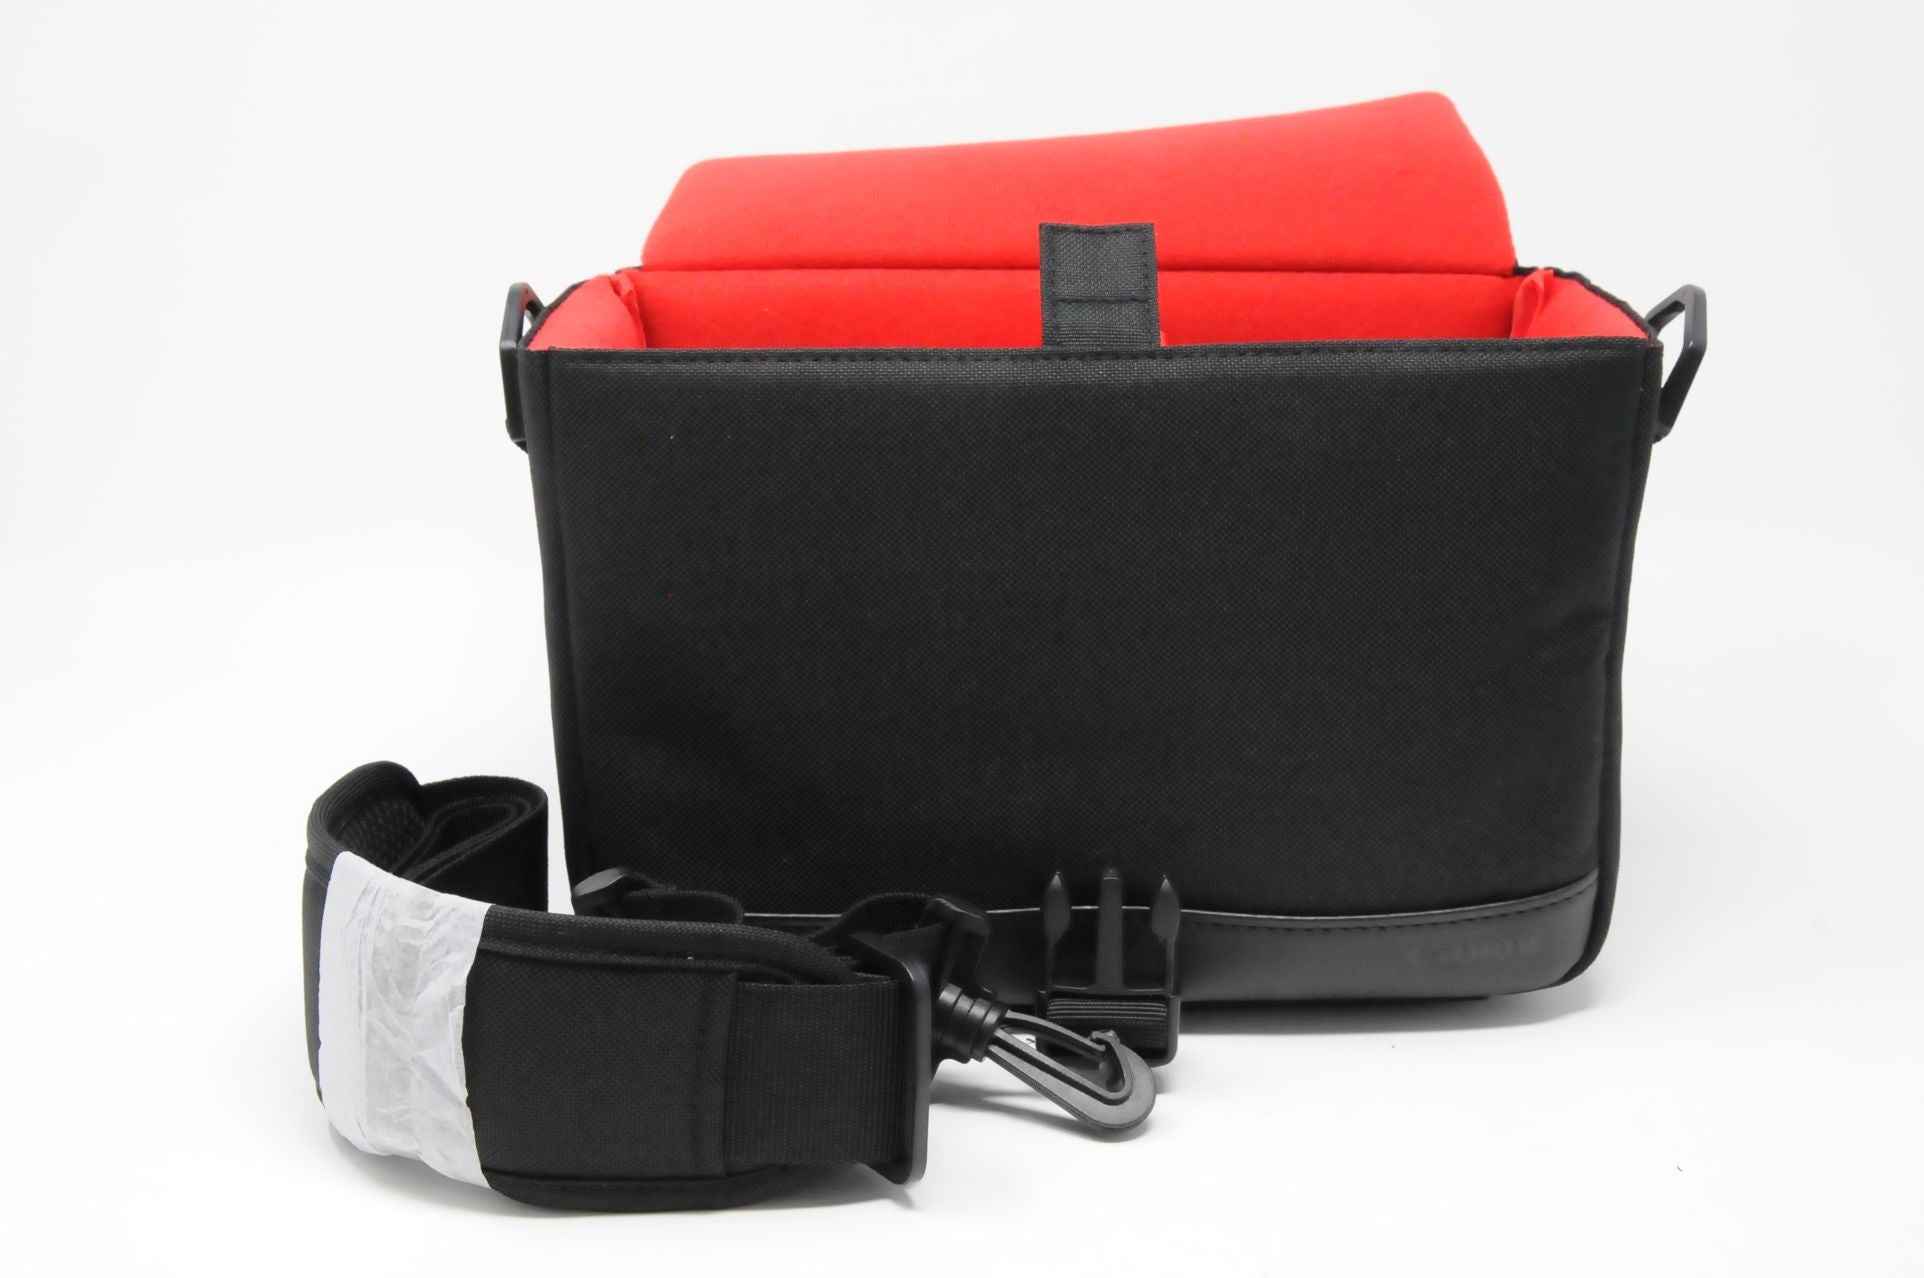 Canon Shoulder bag For DSLR & Mirrorless Cameras - Black